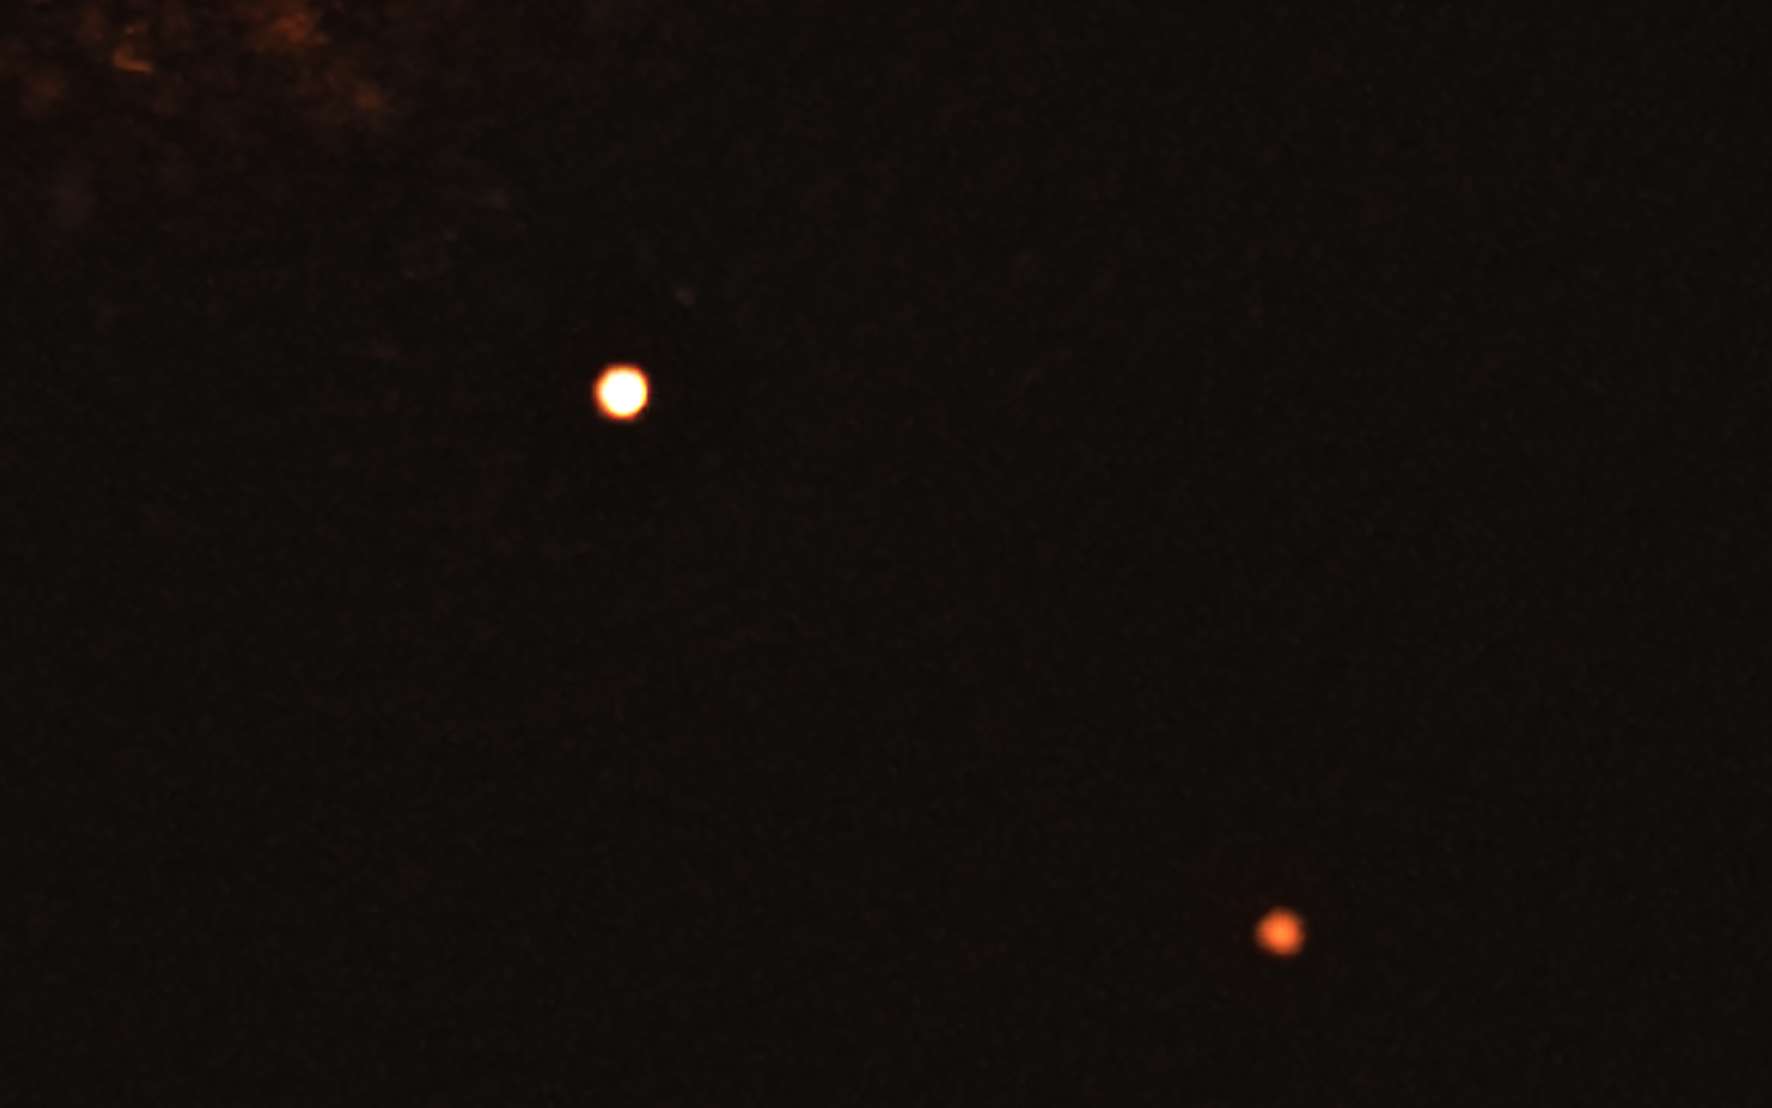 Sur cette image capturée par l’instrument Sphere qui équipe le Very Large Telescope de l’ESO figure l’étoile TYC 8998-760-1 entourée de deux exoplanètes géantes. C’est la toute première fois que les astronomes parviennent à observer directement plus d’une planète en orbite autour d’une étoile semblable au Soleil. © ESO, Bohn et al.